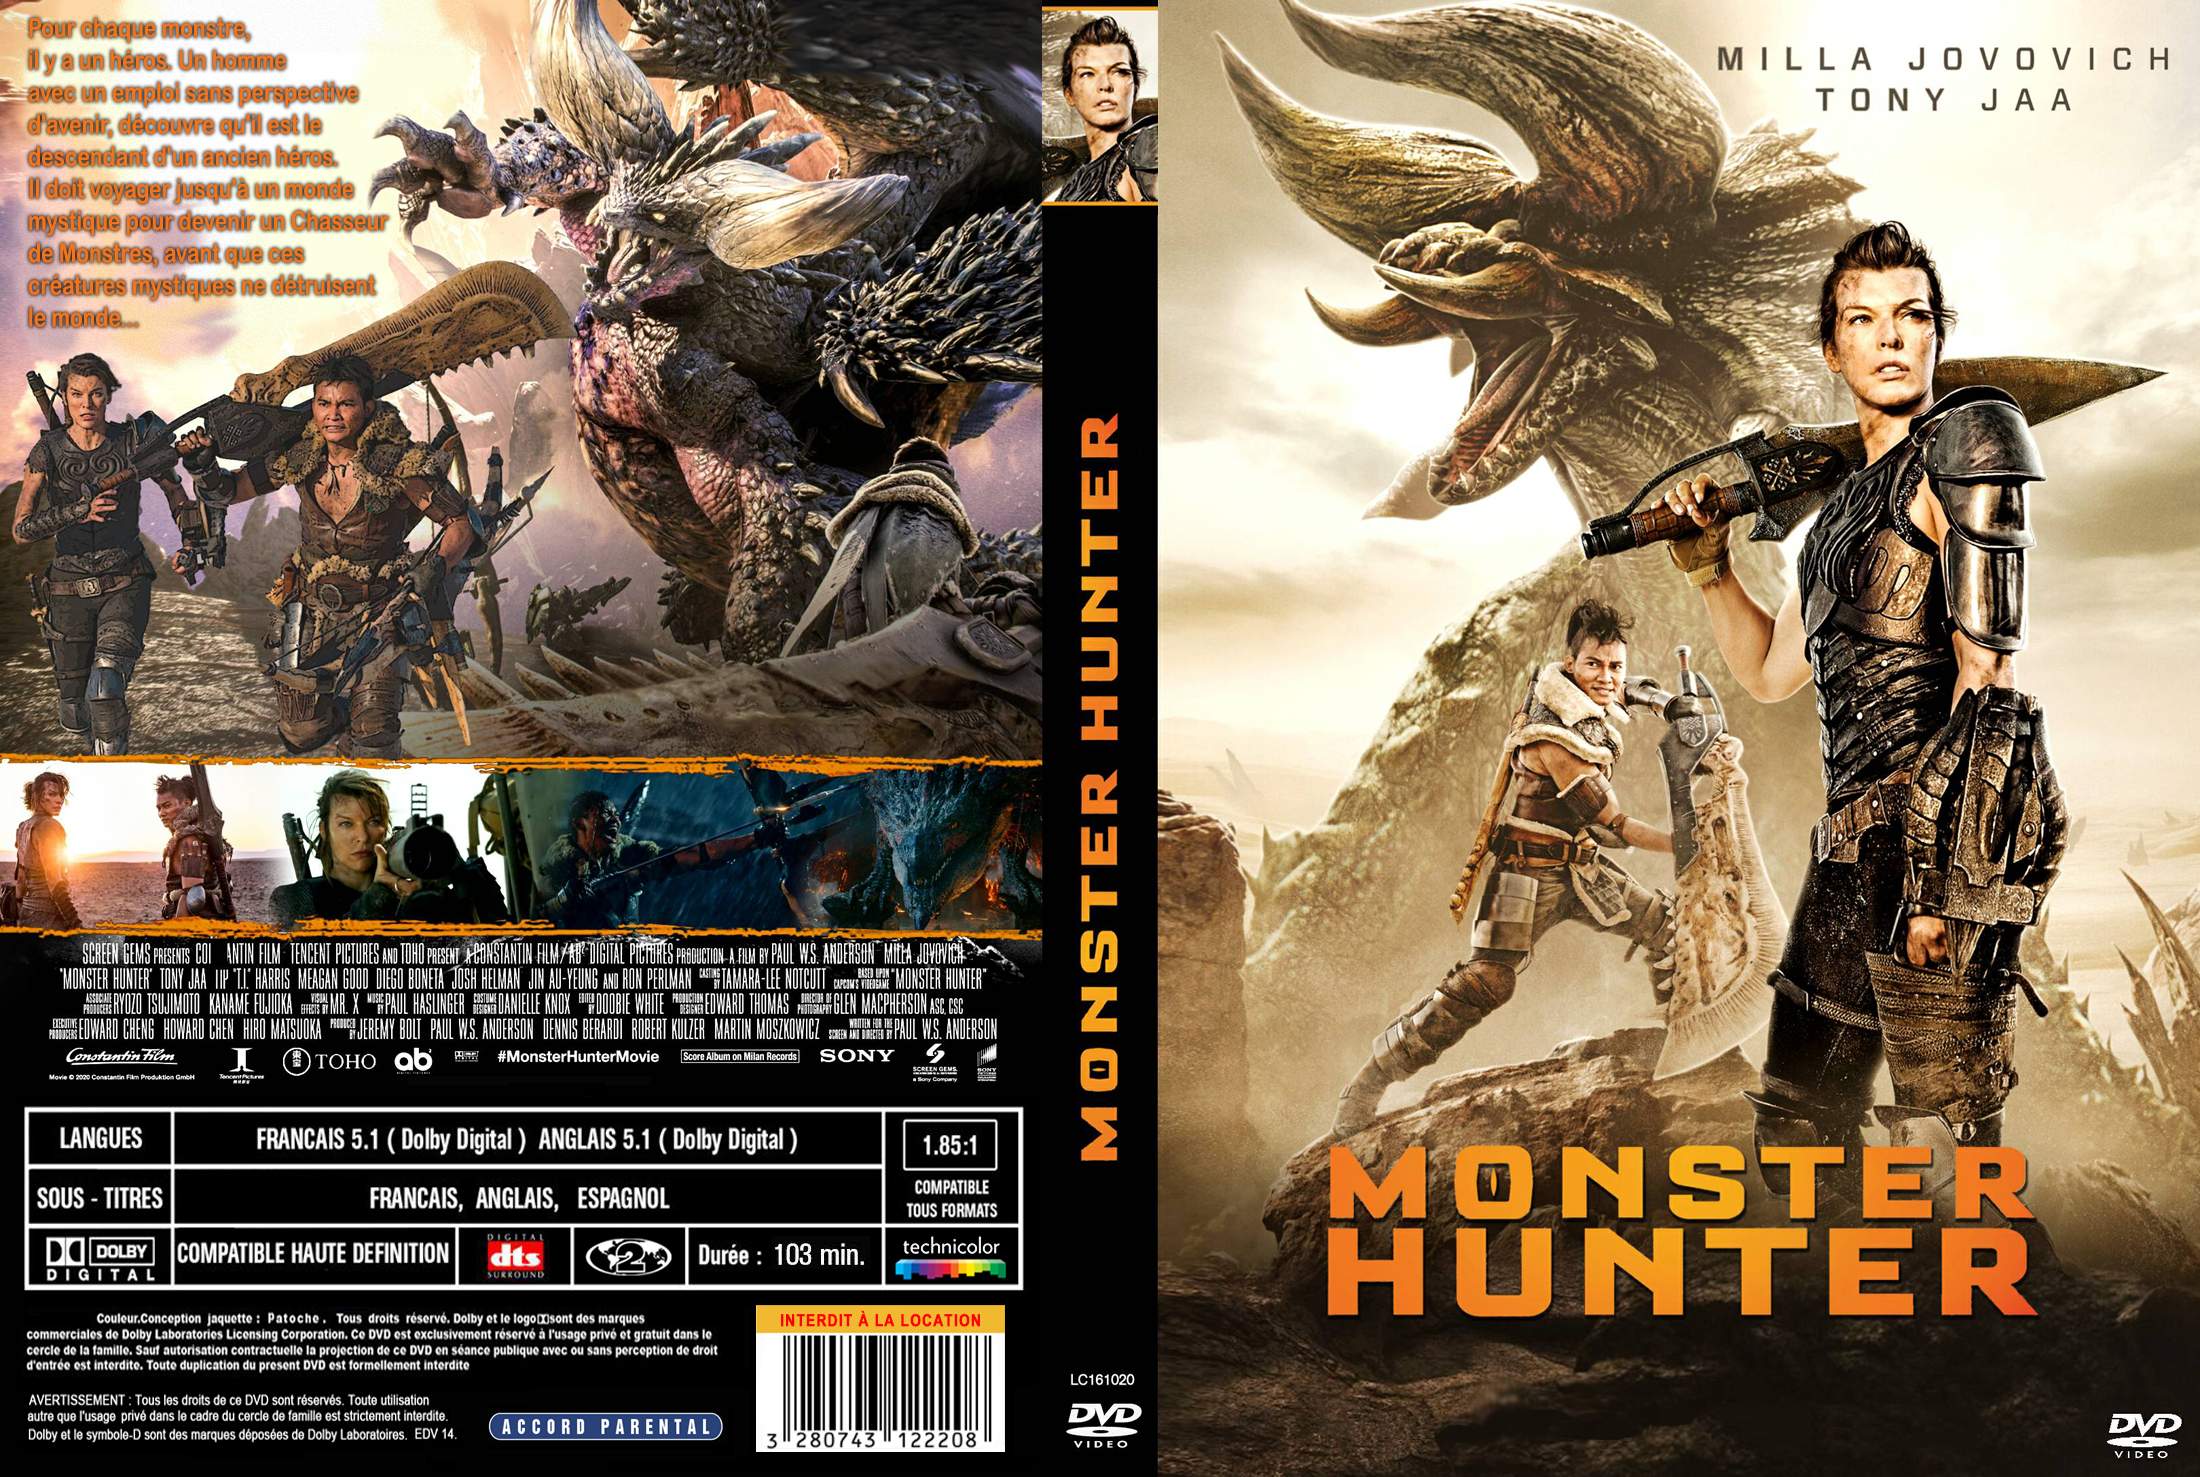 Jaquette DVD Monster Hunter custom